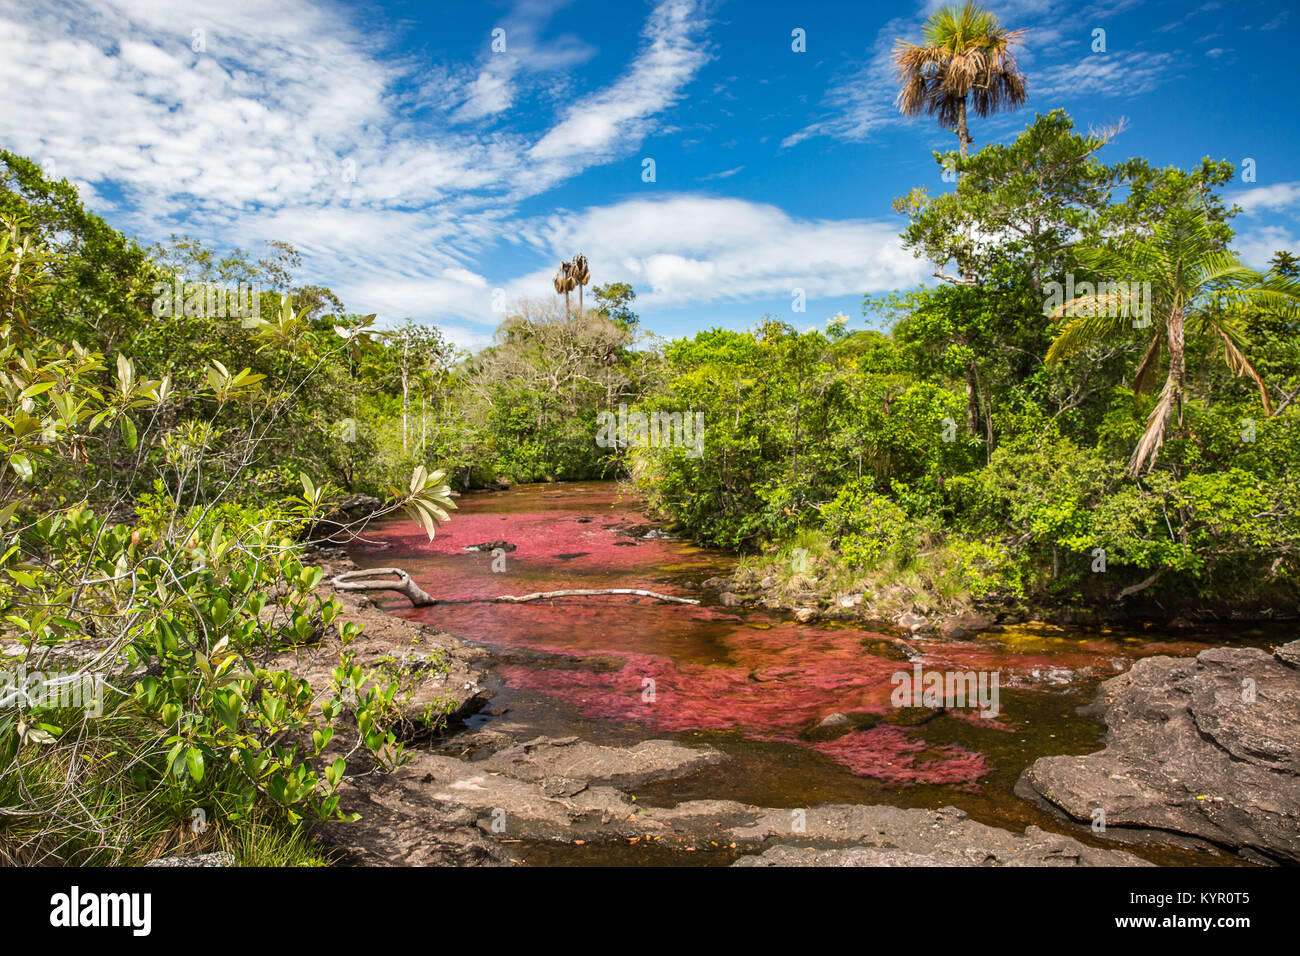 La Macarena, una città isolata in Colombia del dipartimento di Meta, è famosa per la Cano Cristales, il fiume di cinque colori. Foto Stock